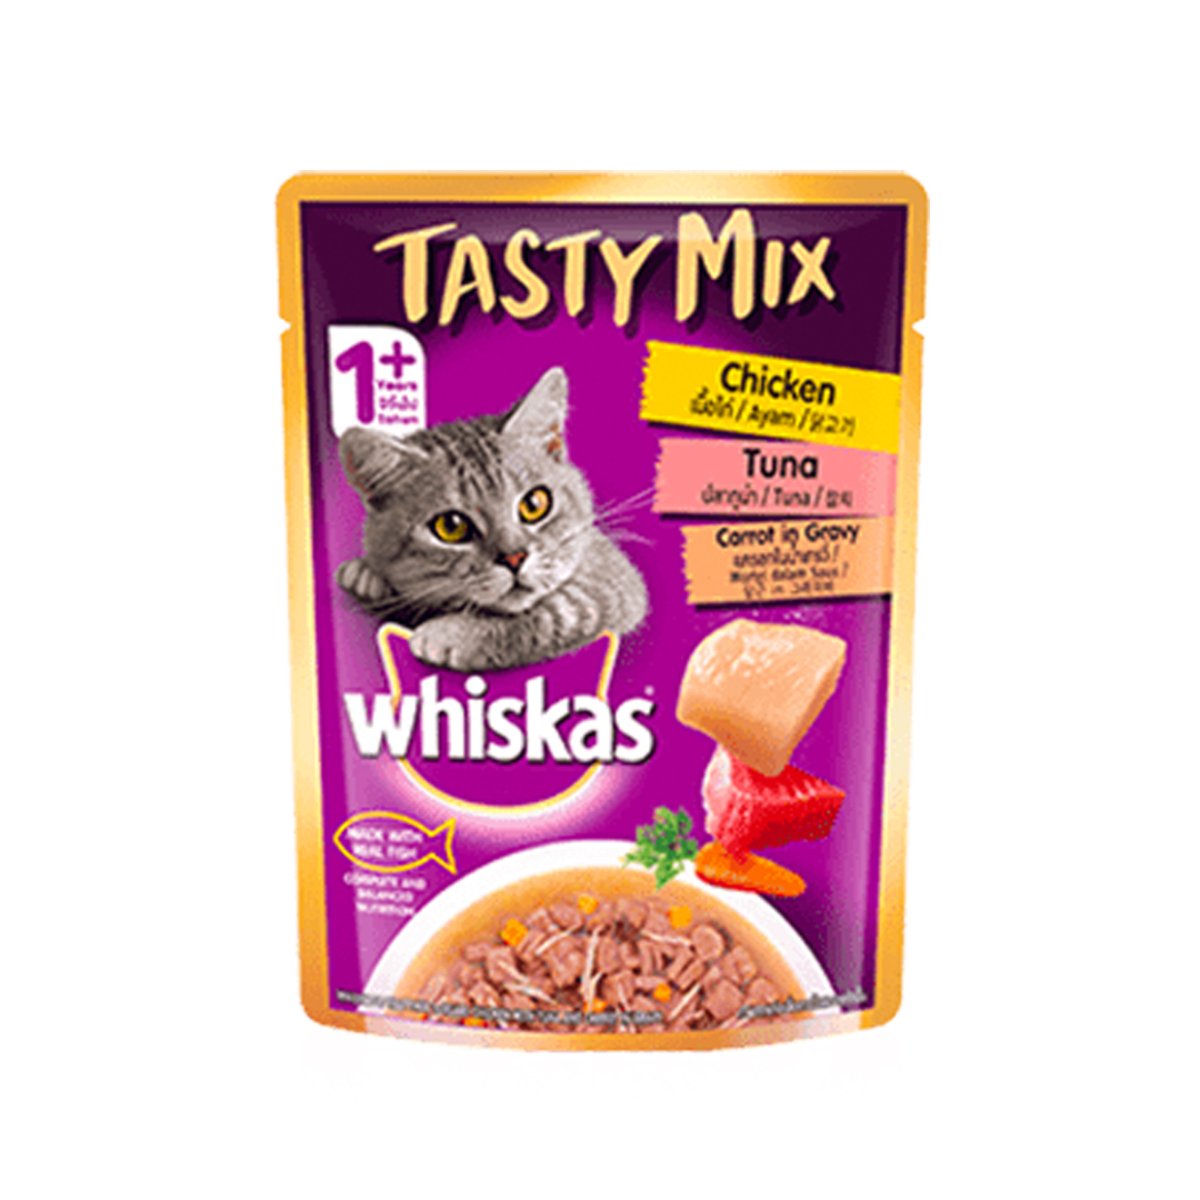 Whiskas Tasty Mix Chicken Tuna 70g